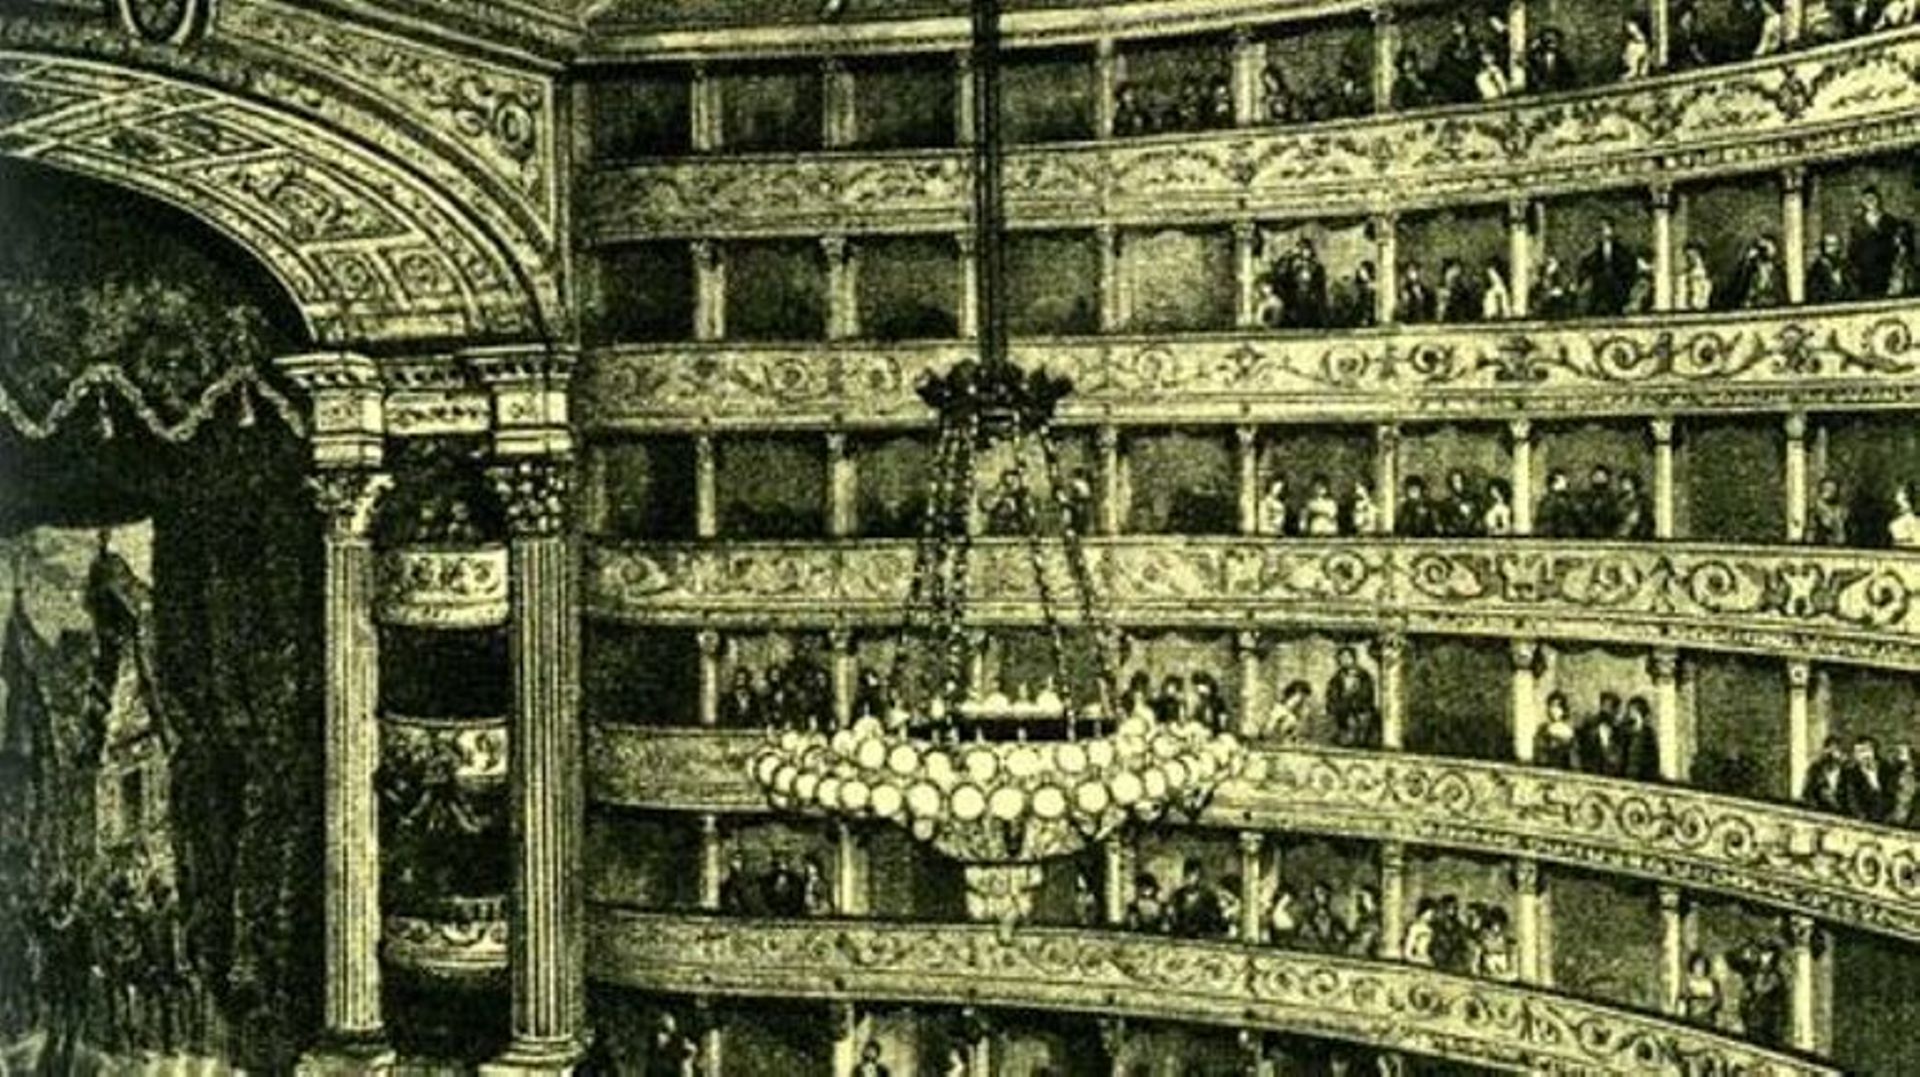 Le théâtre Tordinona ouvre ses portes en 1671. C’est le premier théâtre public de Rome, inauguré par la reine Christine de Suède. 